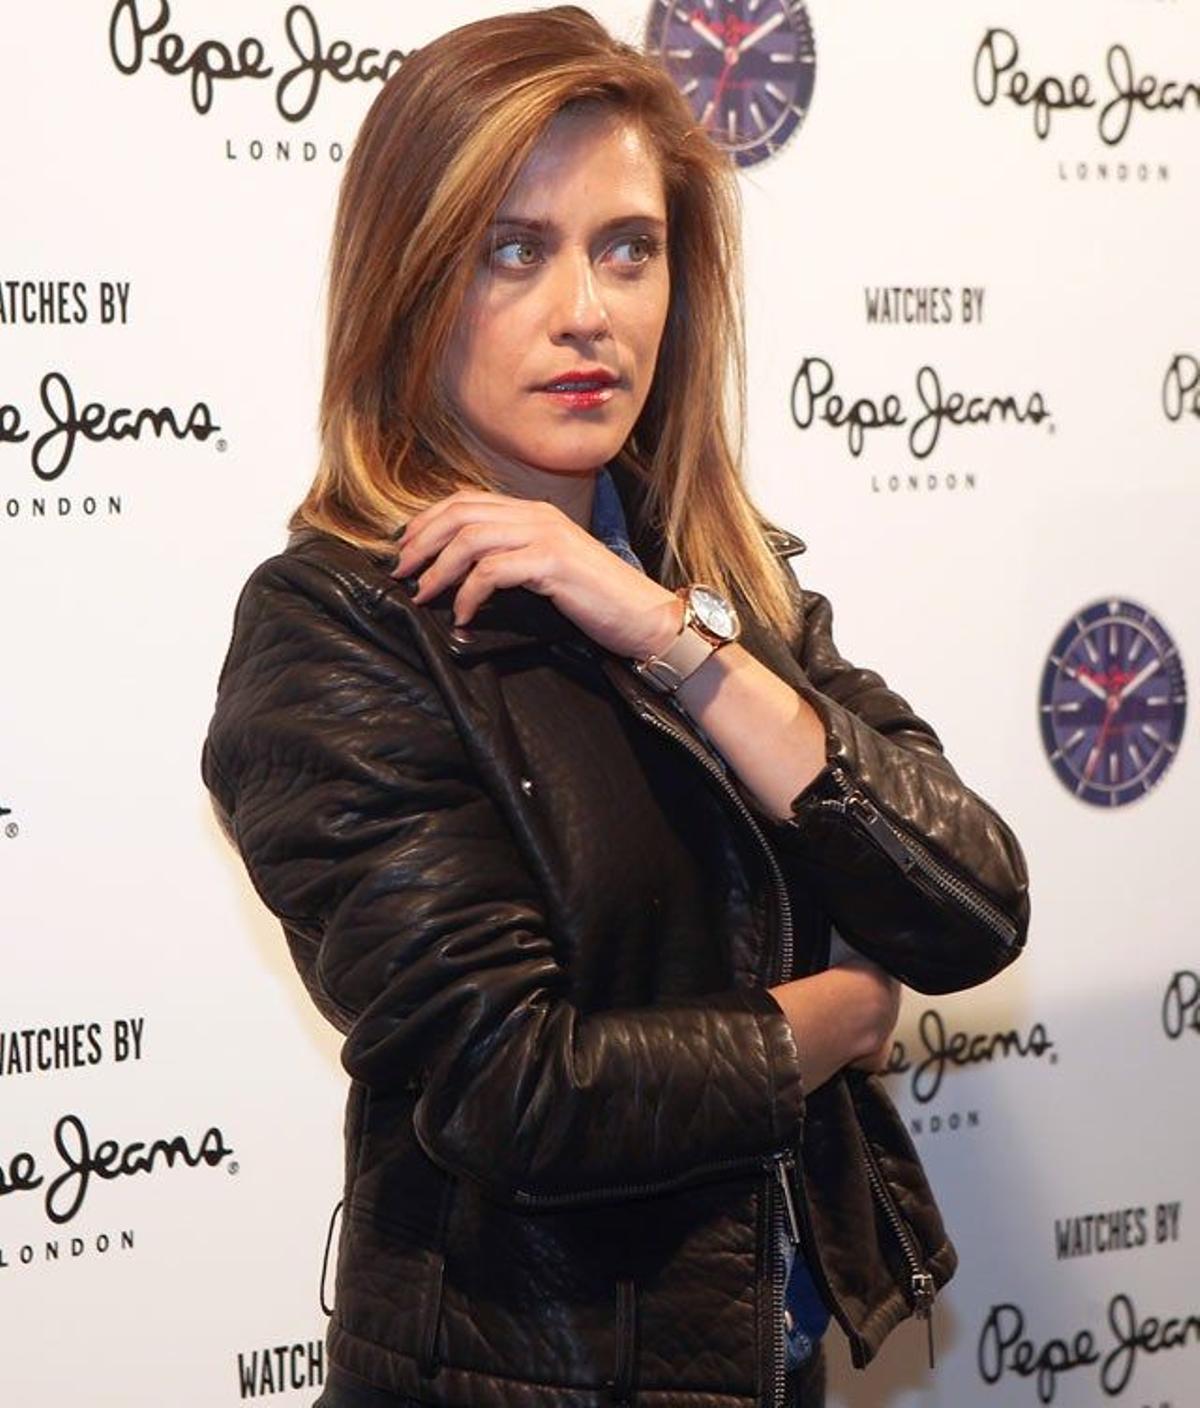 María León, en la presentación de los relojes de Pepe Jeans